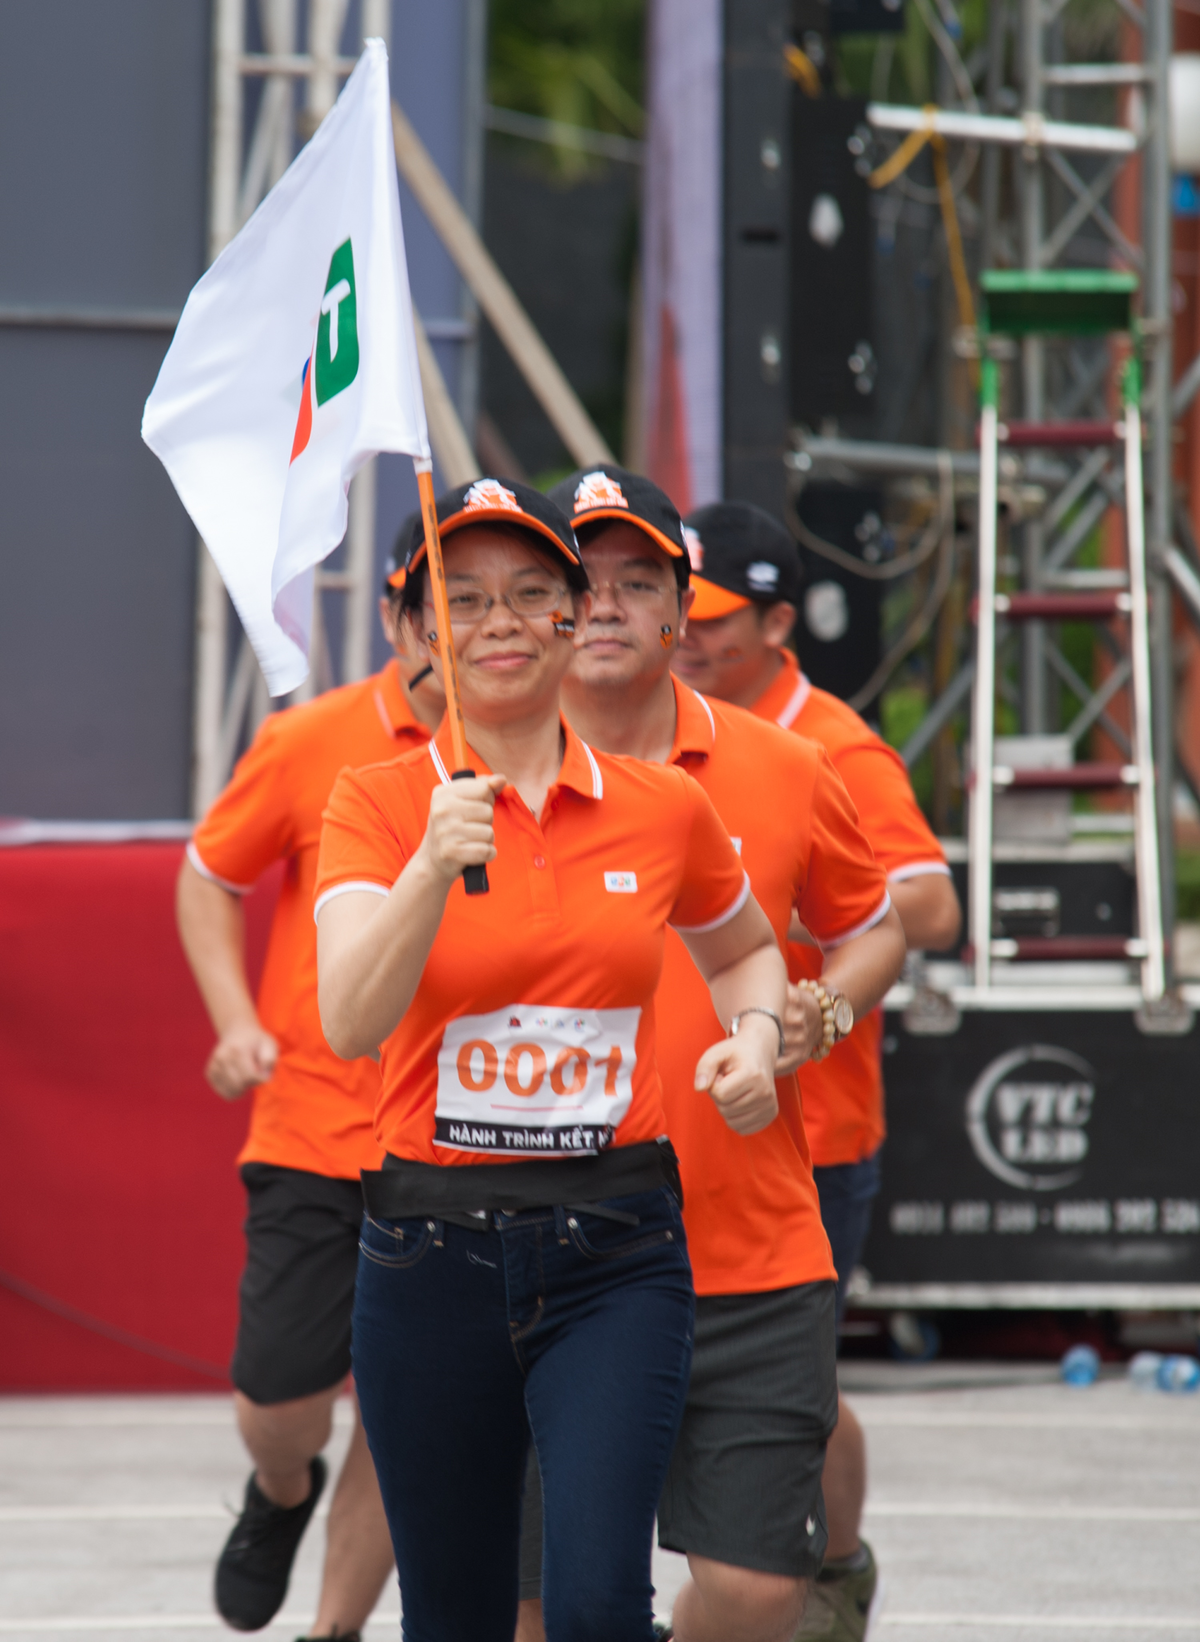 <p> 9h ngày 5/8, Chủ tịch FPT Telecom Chu Thanh Hà mang theo lá cờ FPT khởi đầu "Hành trình kết nối" của 3.000 người nhà "Cáo". Từ đây, biểu tượng sự kết nối sẽ trải qua hành trình 30 ngày vượt qua 2.600 km đến với đất mũi Cà mau.</p>